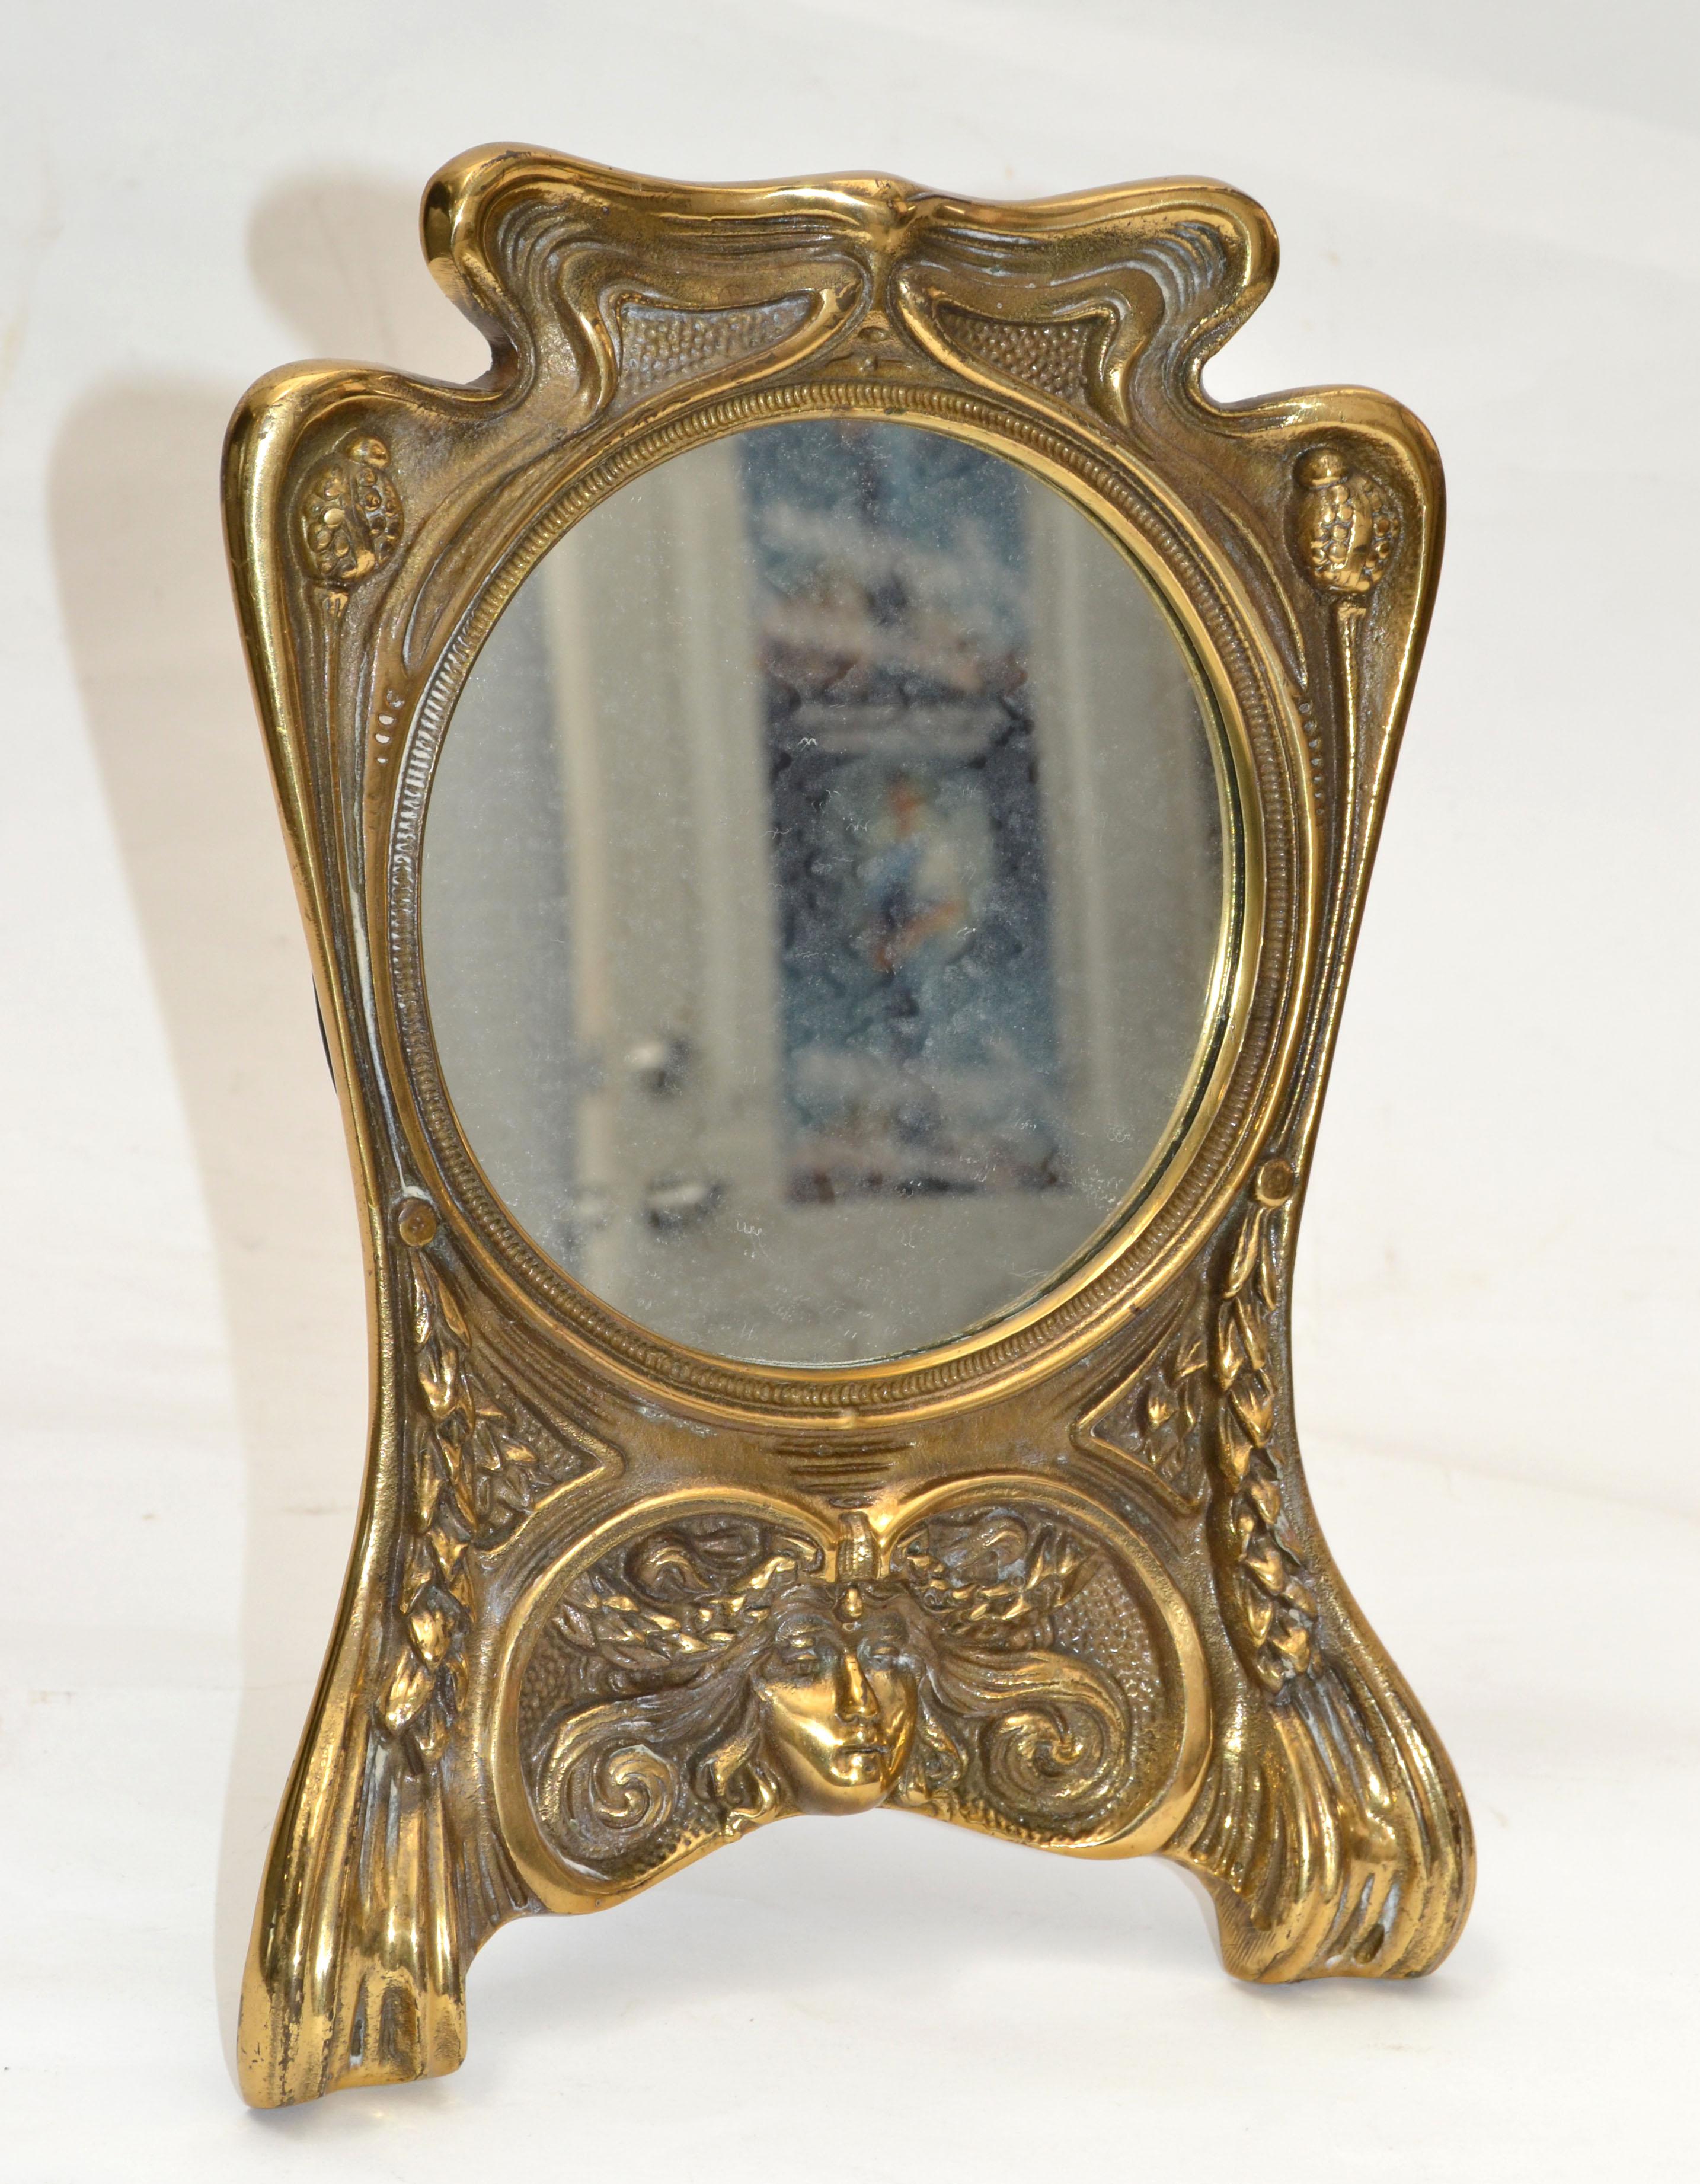 Jugendstil skurrile handgefertigte Bronze gegossen Tisch oder Eitelkeit Spiegel.
Größe des Spiegels: 5.25 Zoll Durchmesser.